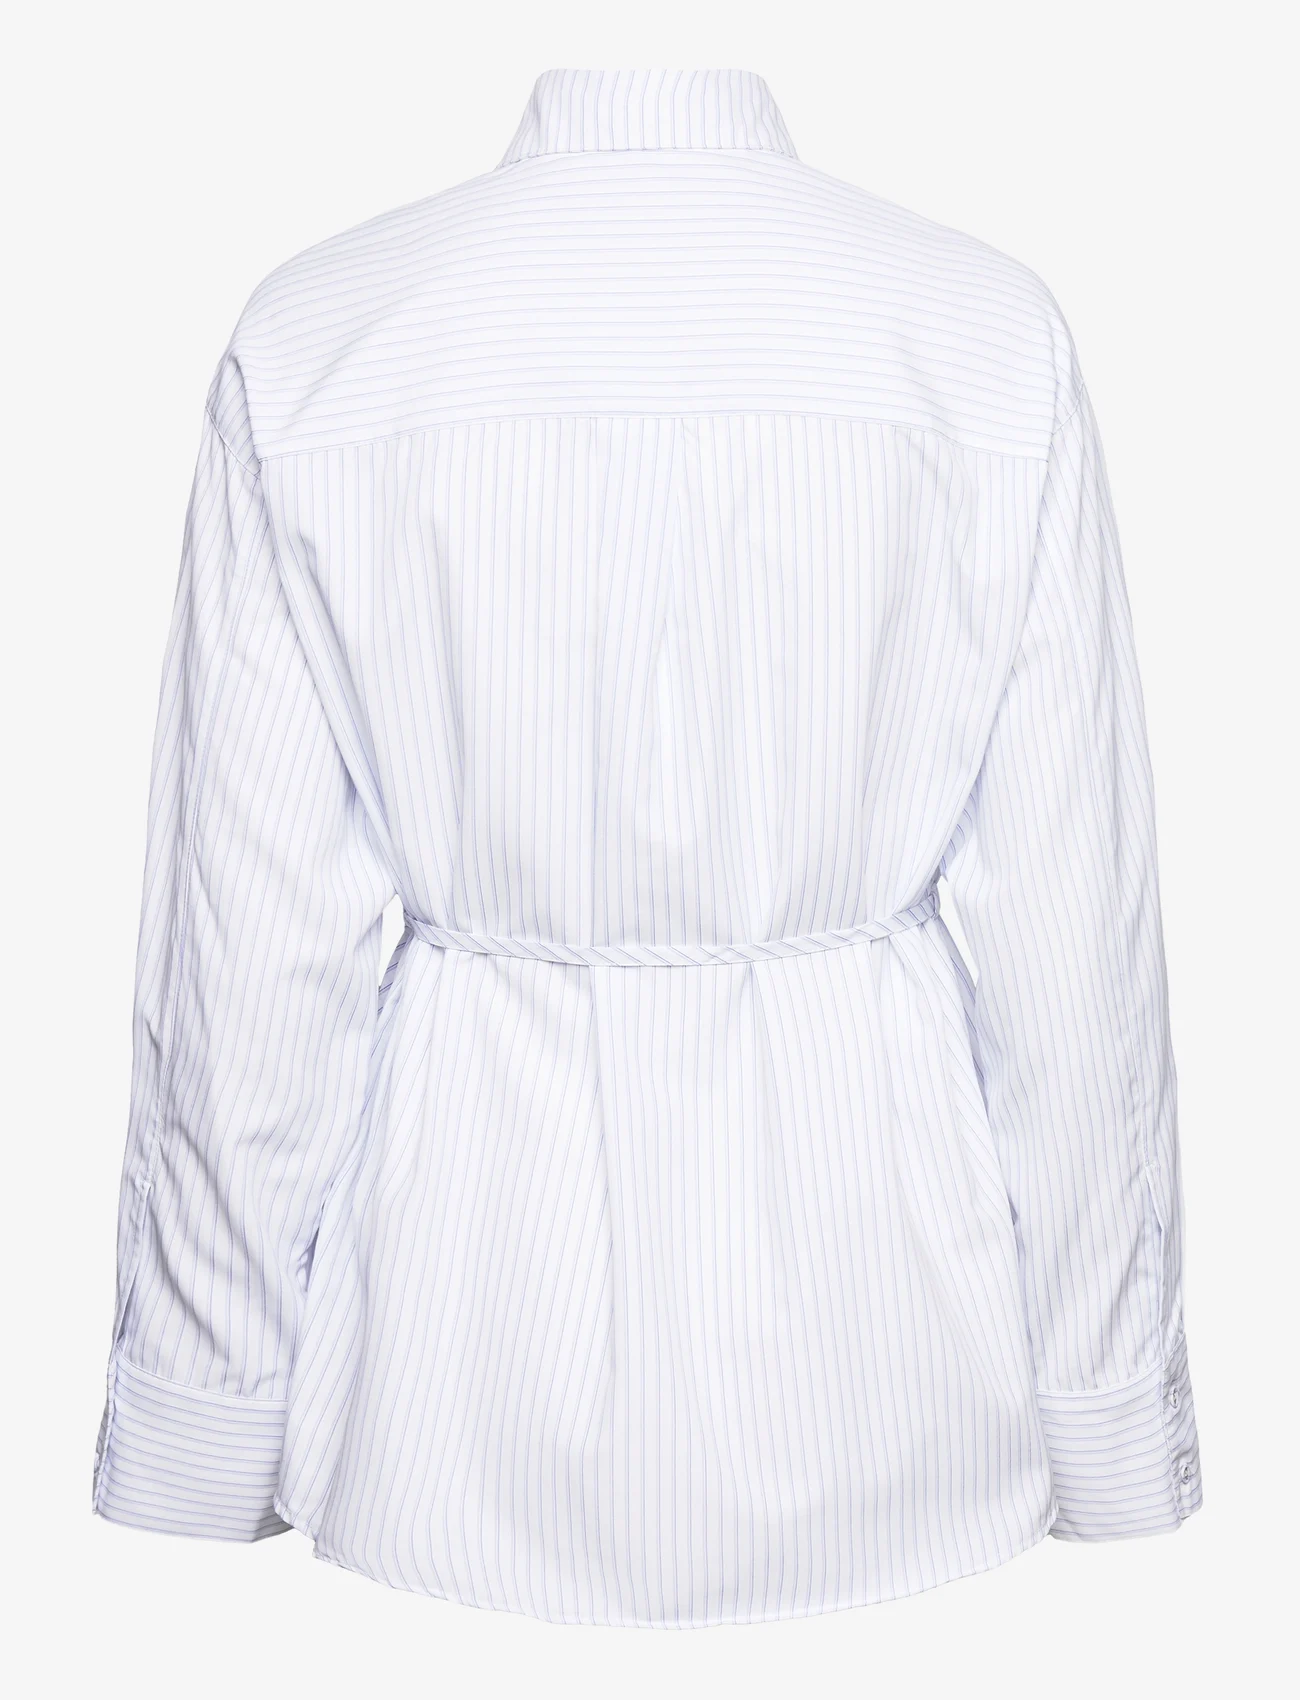 NORR - Mona shirt - pitkähihaiset paidat - off-white - 1